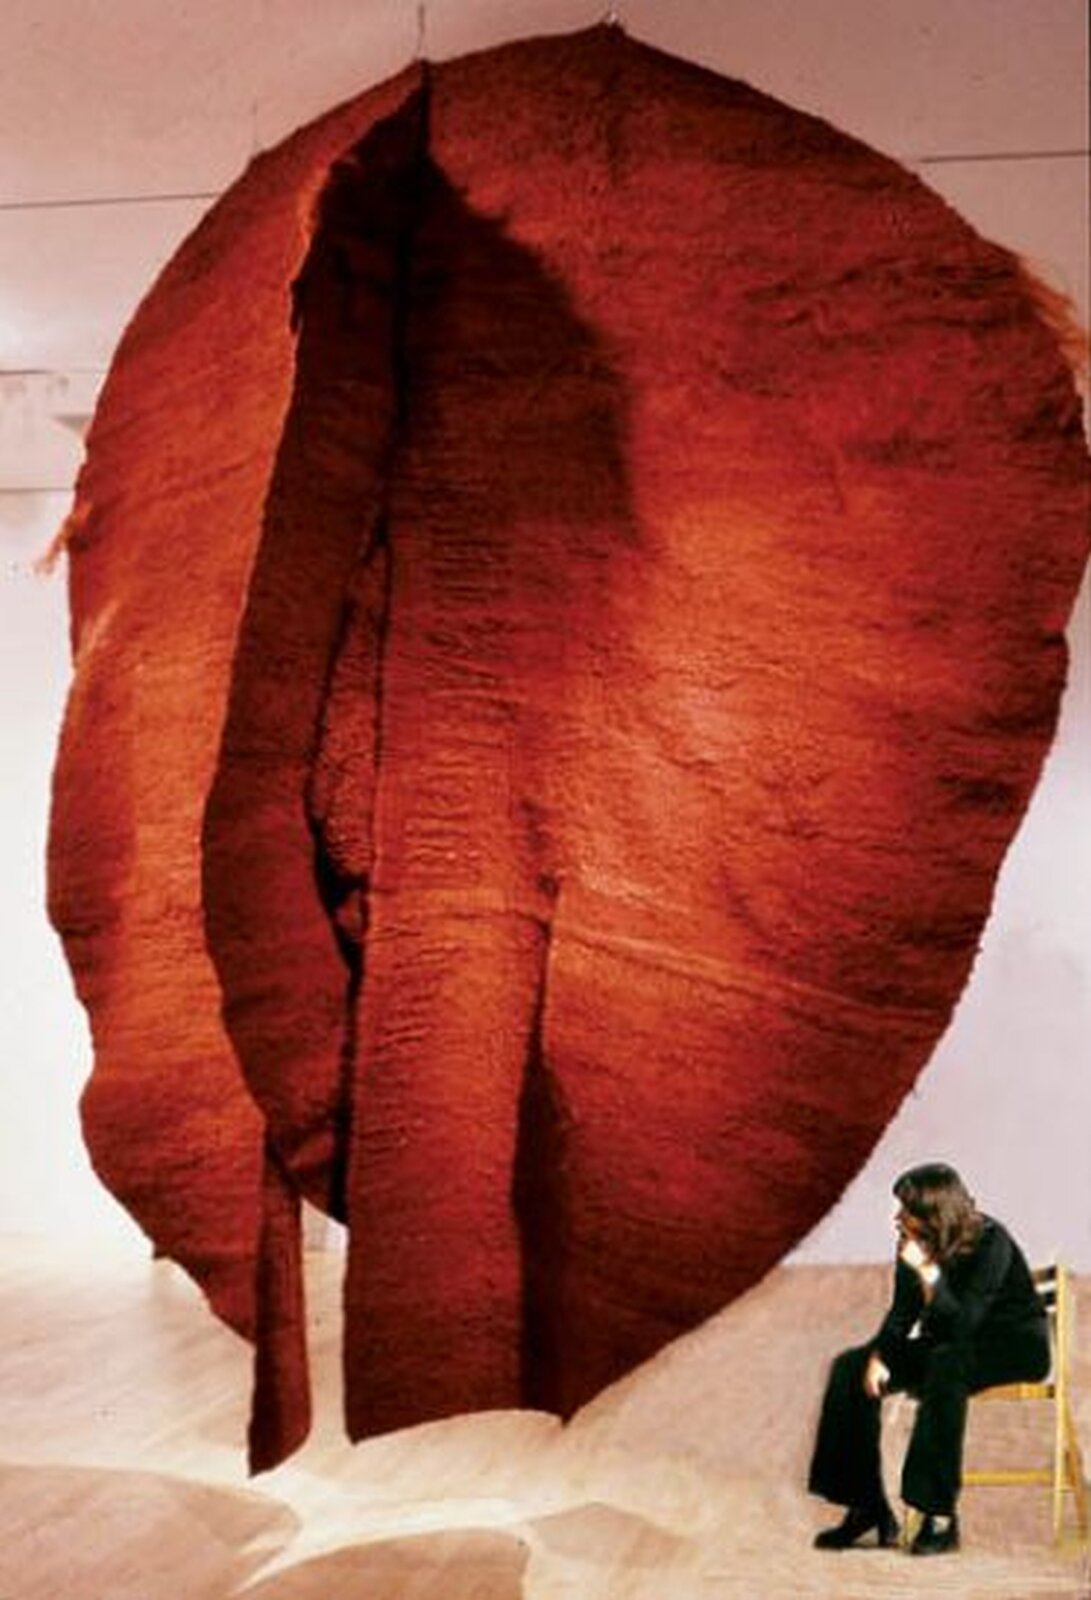 Ilustracja przedstawia dużą płachtę czerwonego materiału. Jest to instalacja artystyczna Abakan czerwony Magdaleny Abakanowicz.